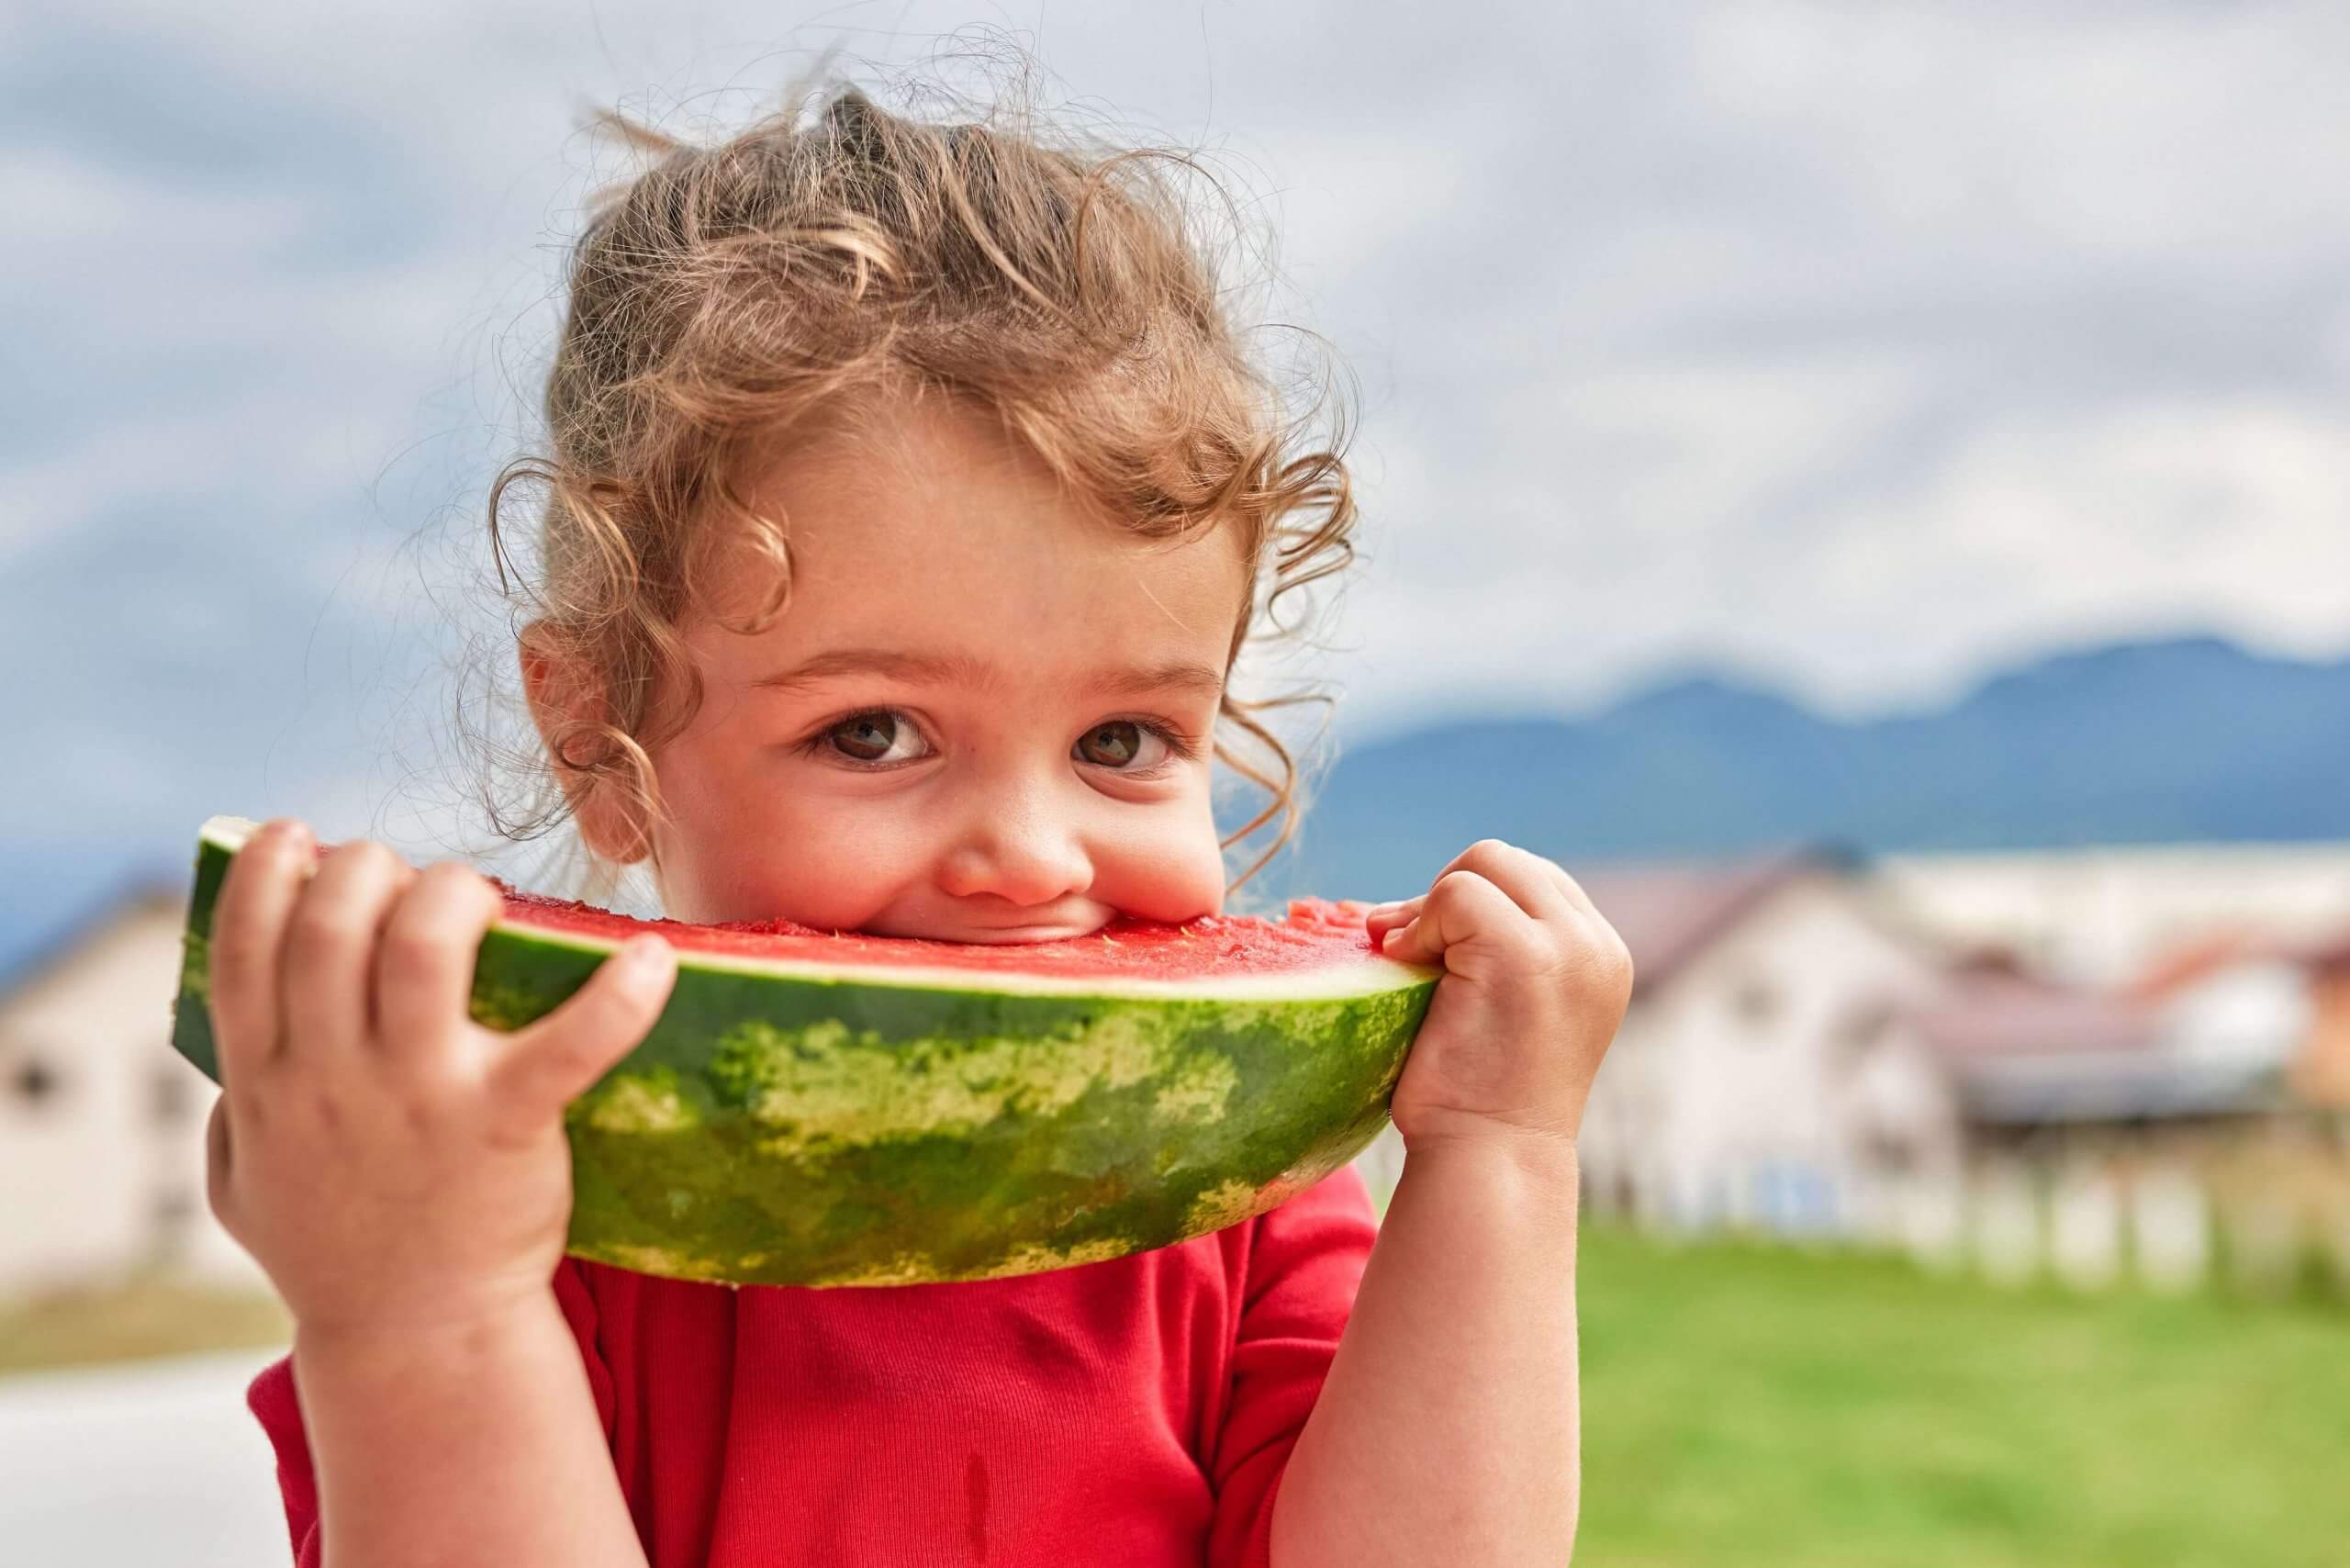 Alimentación sana para niños: menús y productos adecuados que les encantan